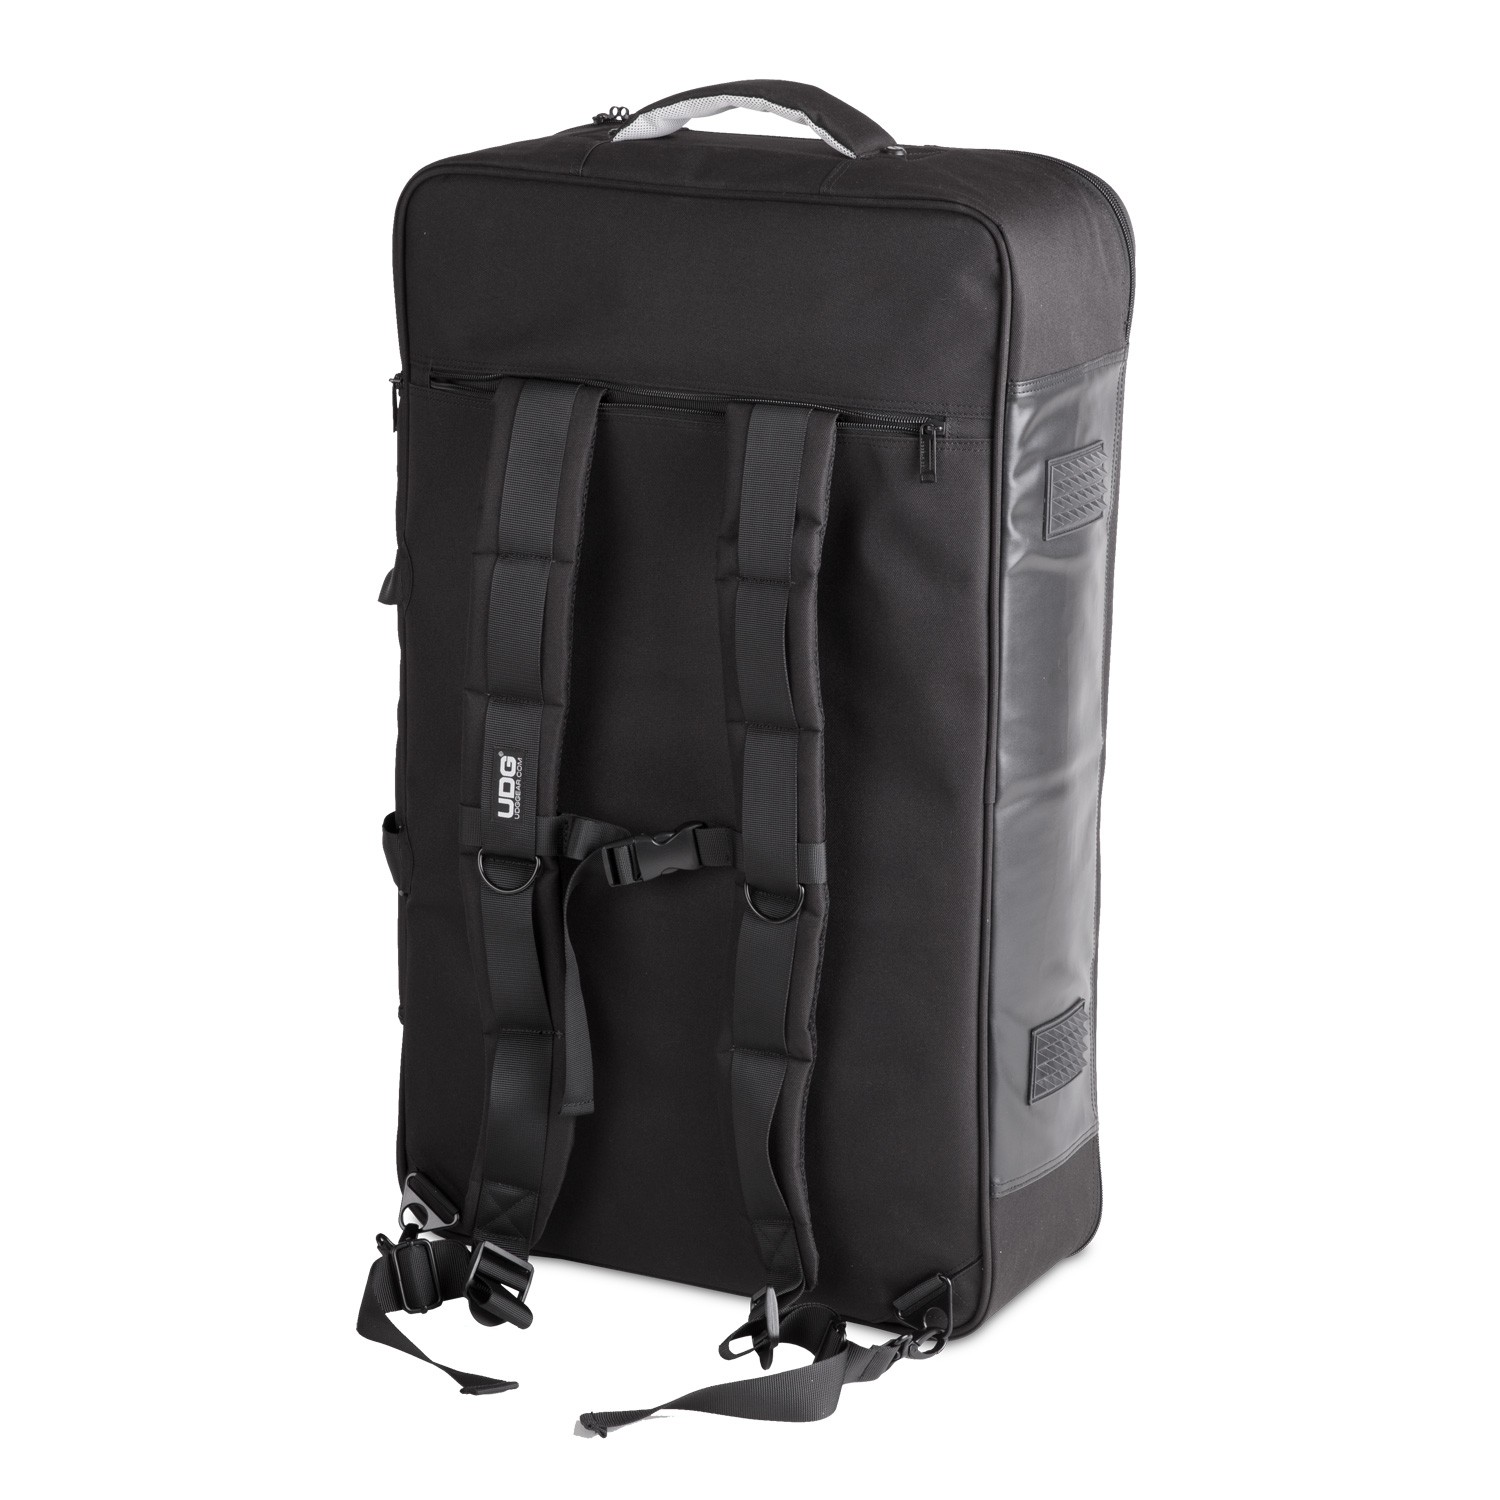 Udg Urbanite Midi Controller Backpack Large Black - Trolley DJ - Variation 3